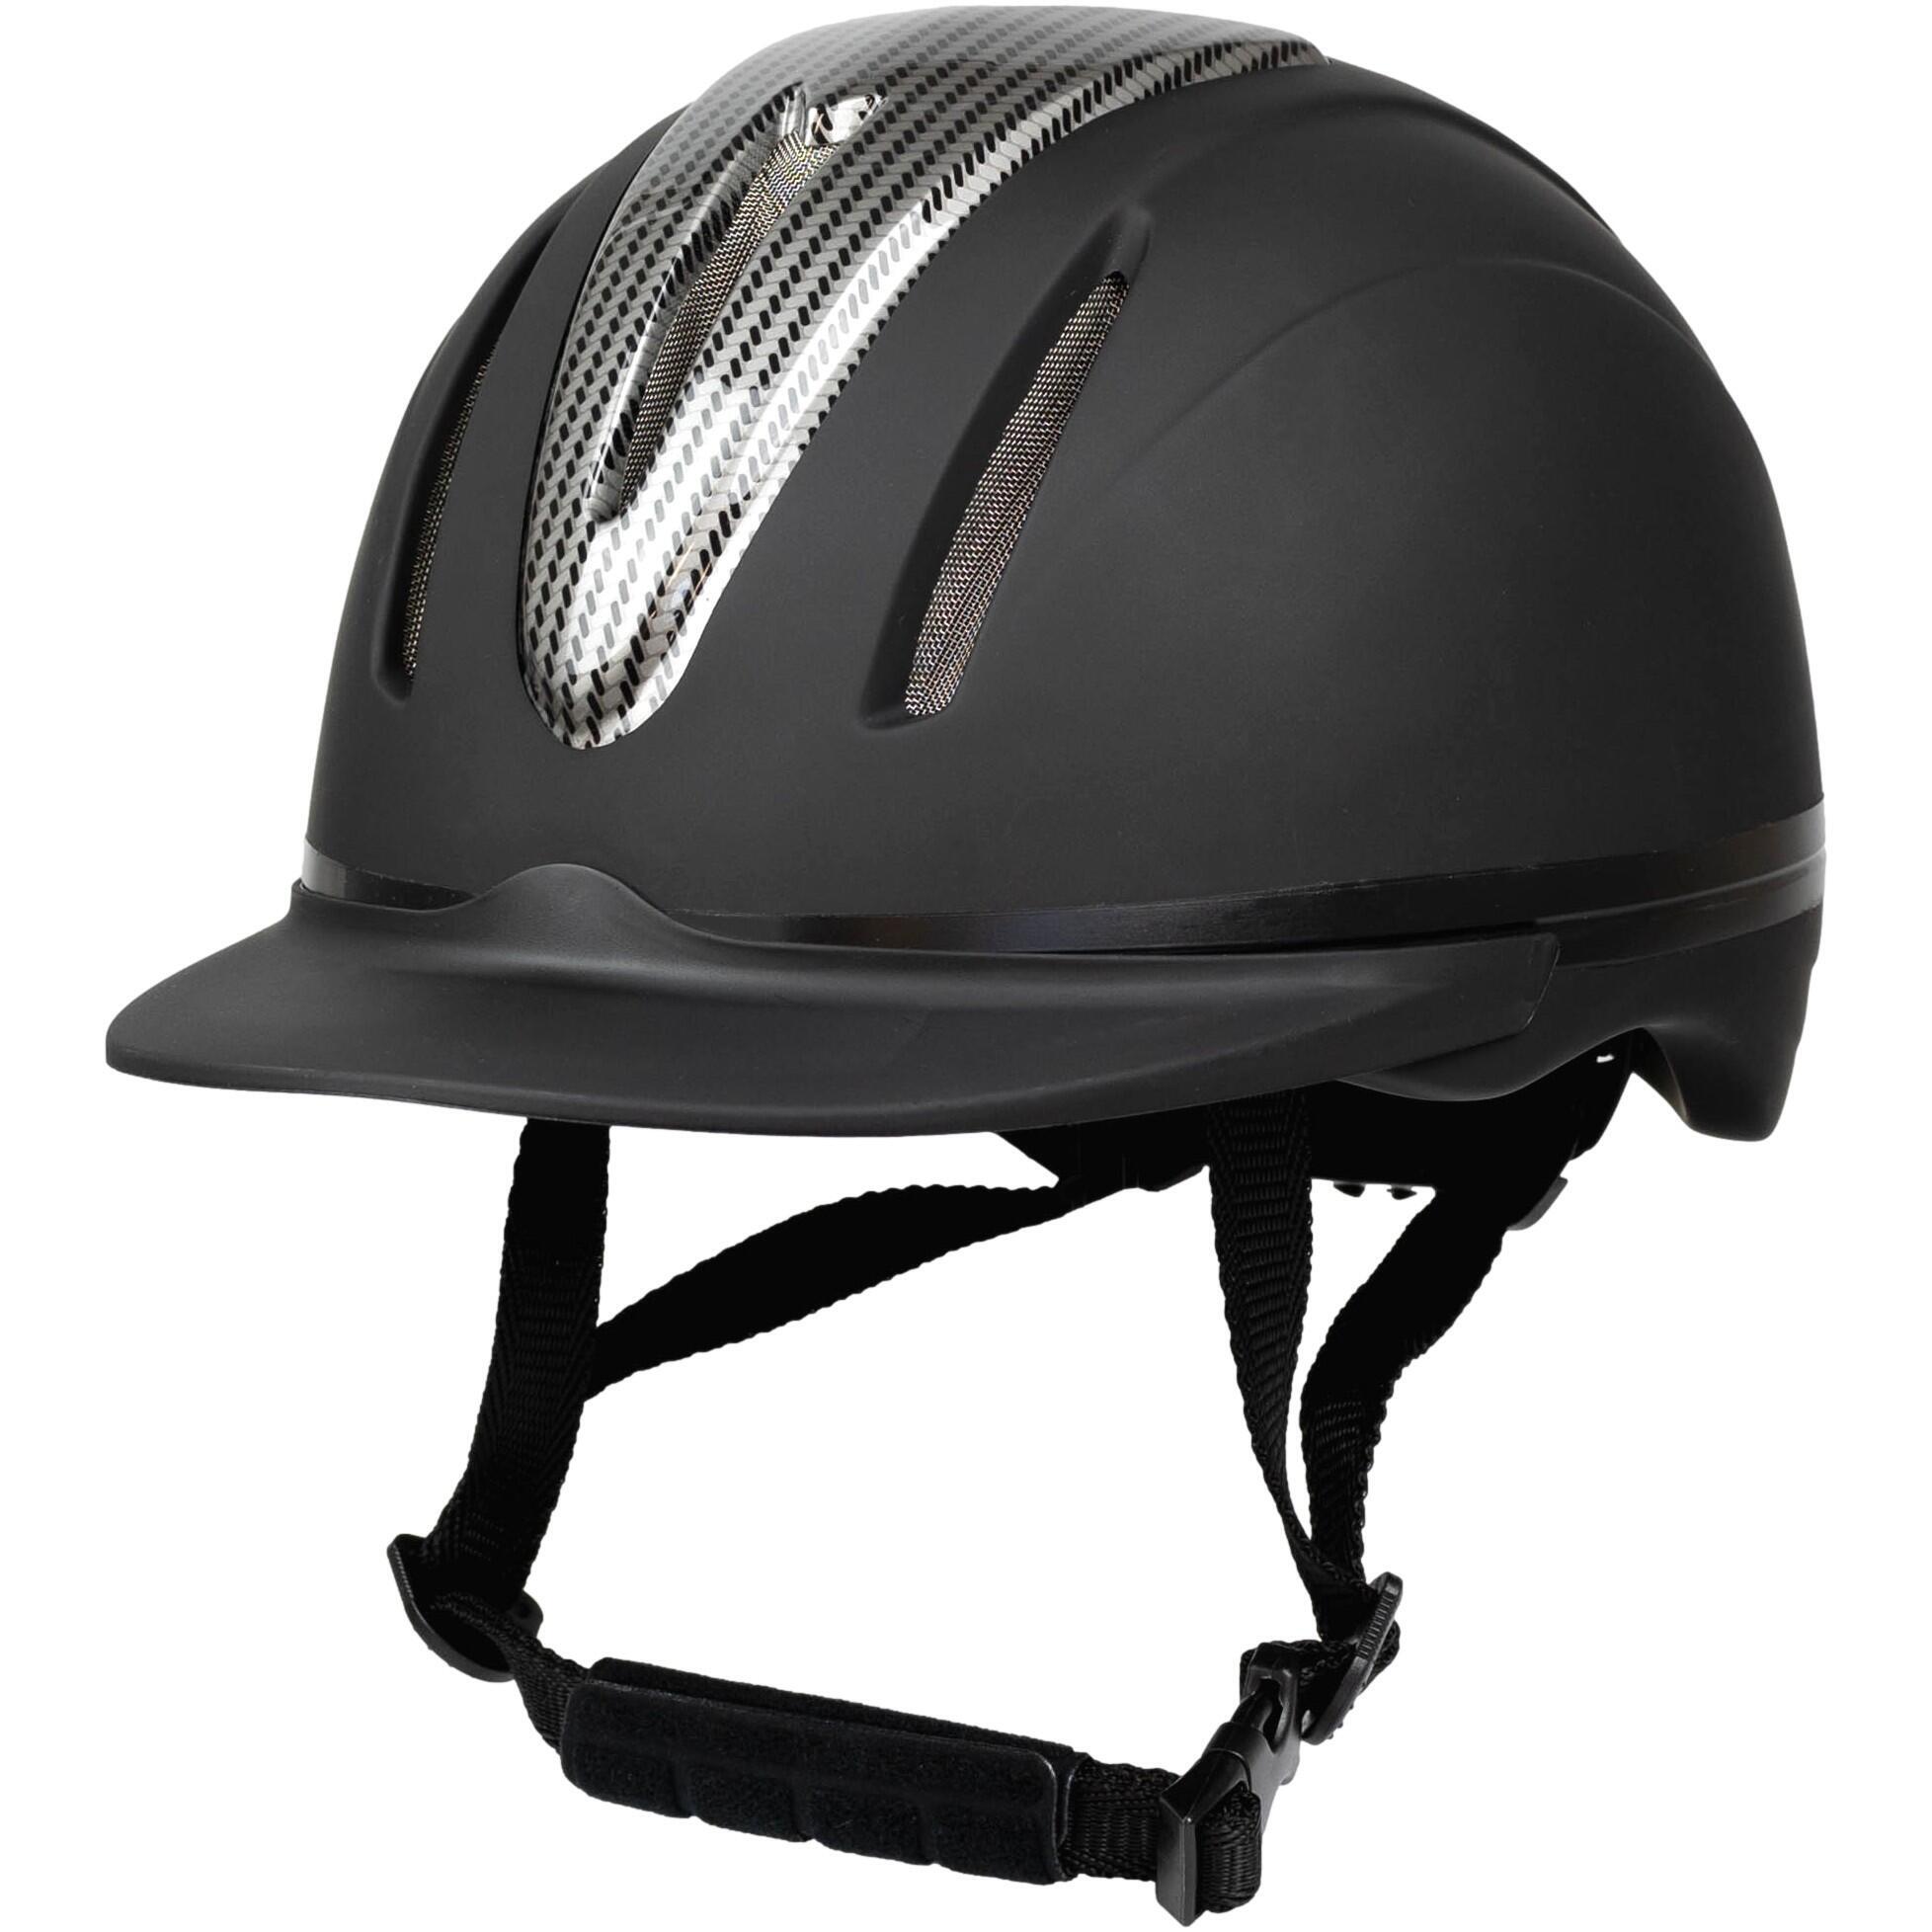 Шлем RL24 Innovation для верховой езды, черный шлем для верховой езды младшего возраста классический британский защитный шлем с бриллиантами бархатный дышащий шлем